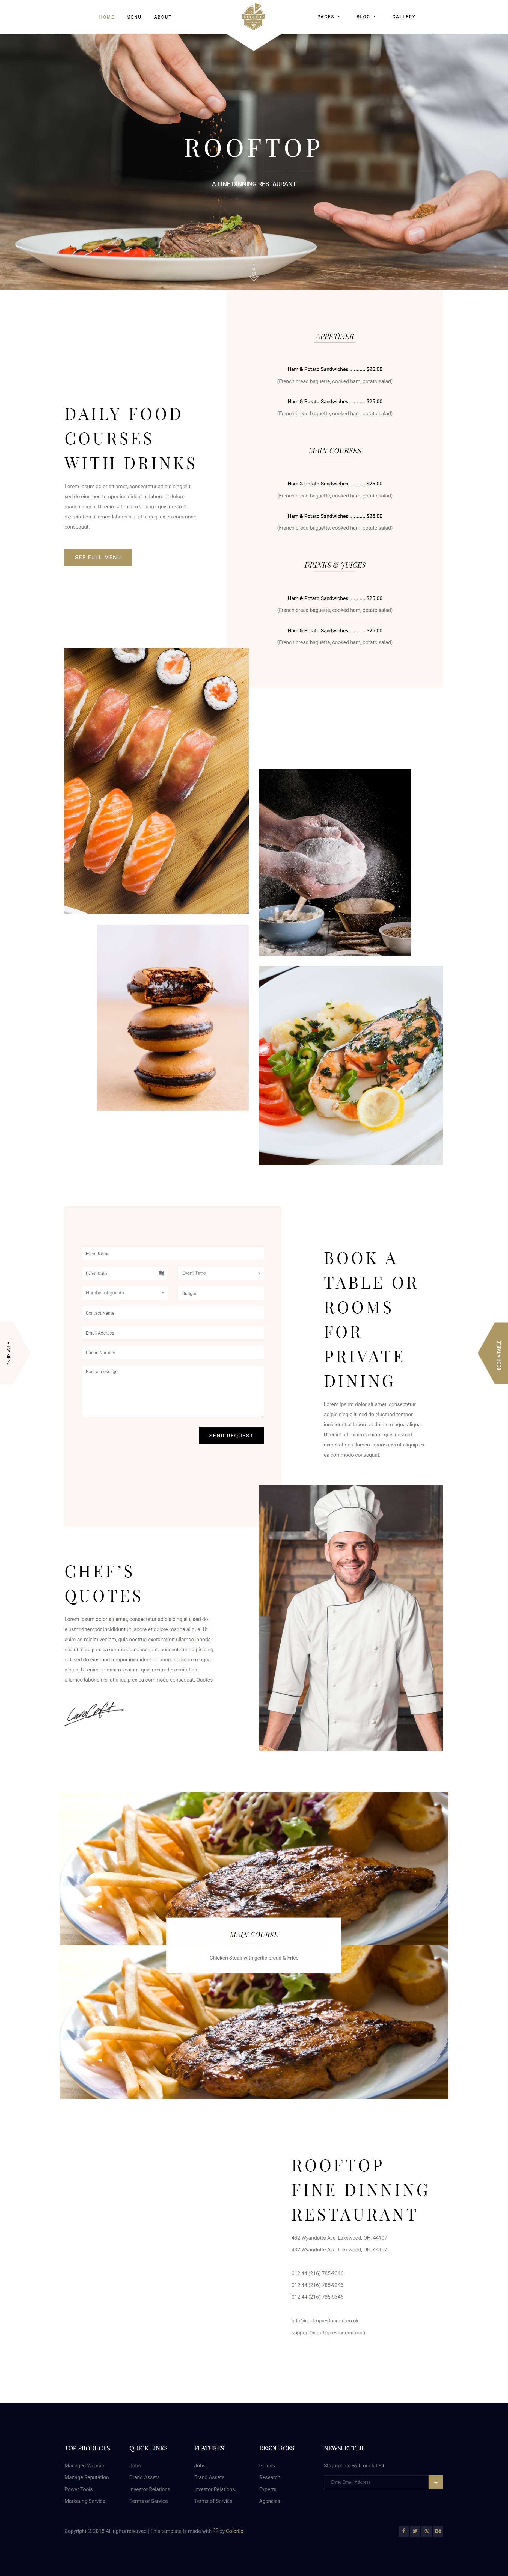 棕色欧美风格响应式顶级美食网页模板